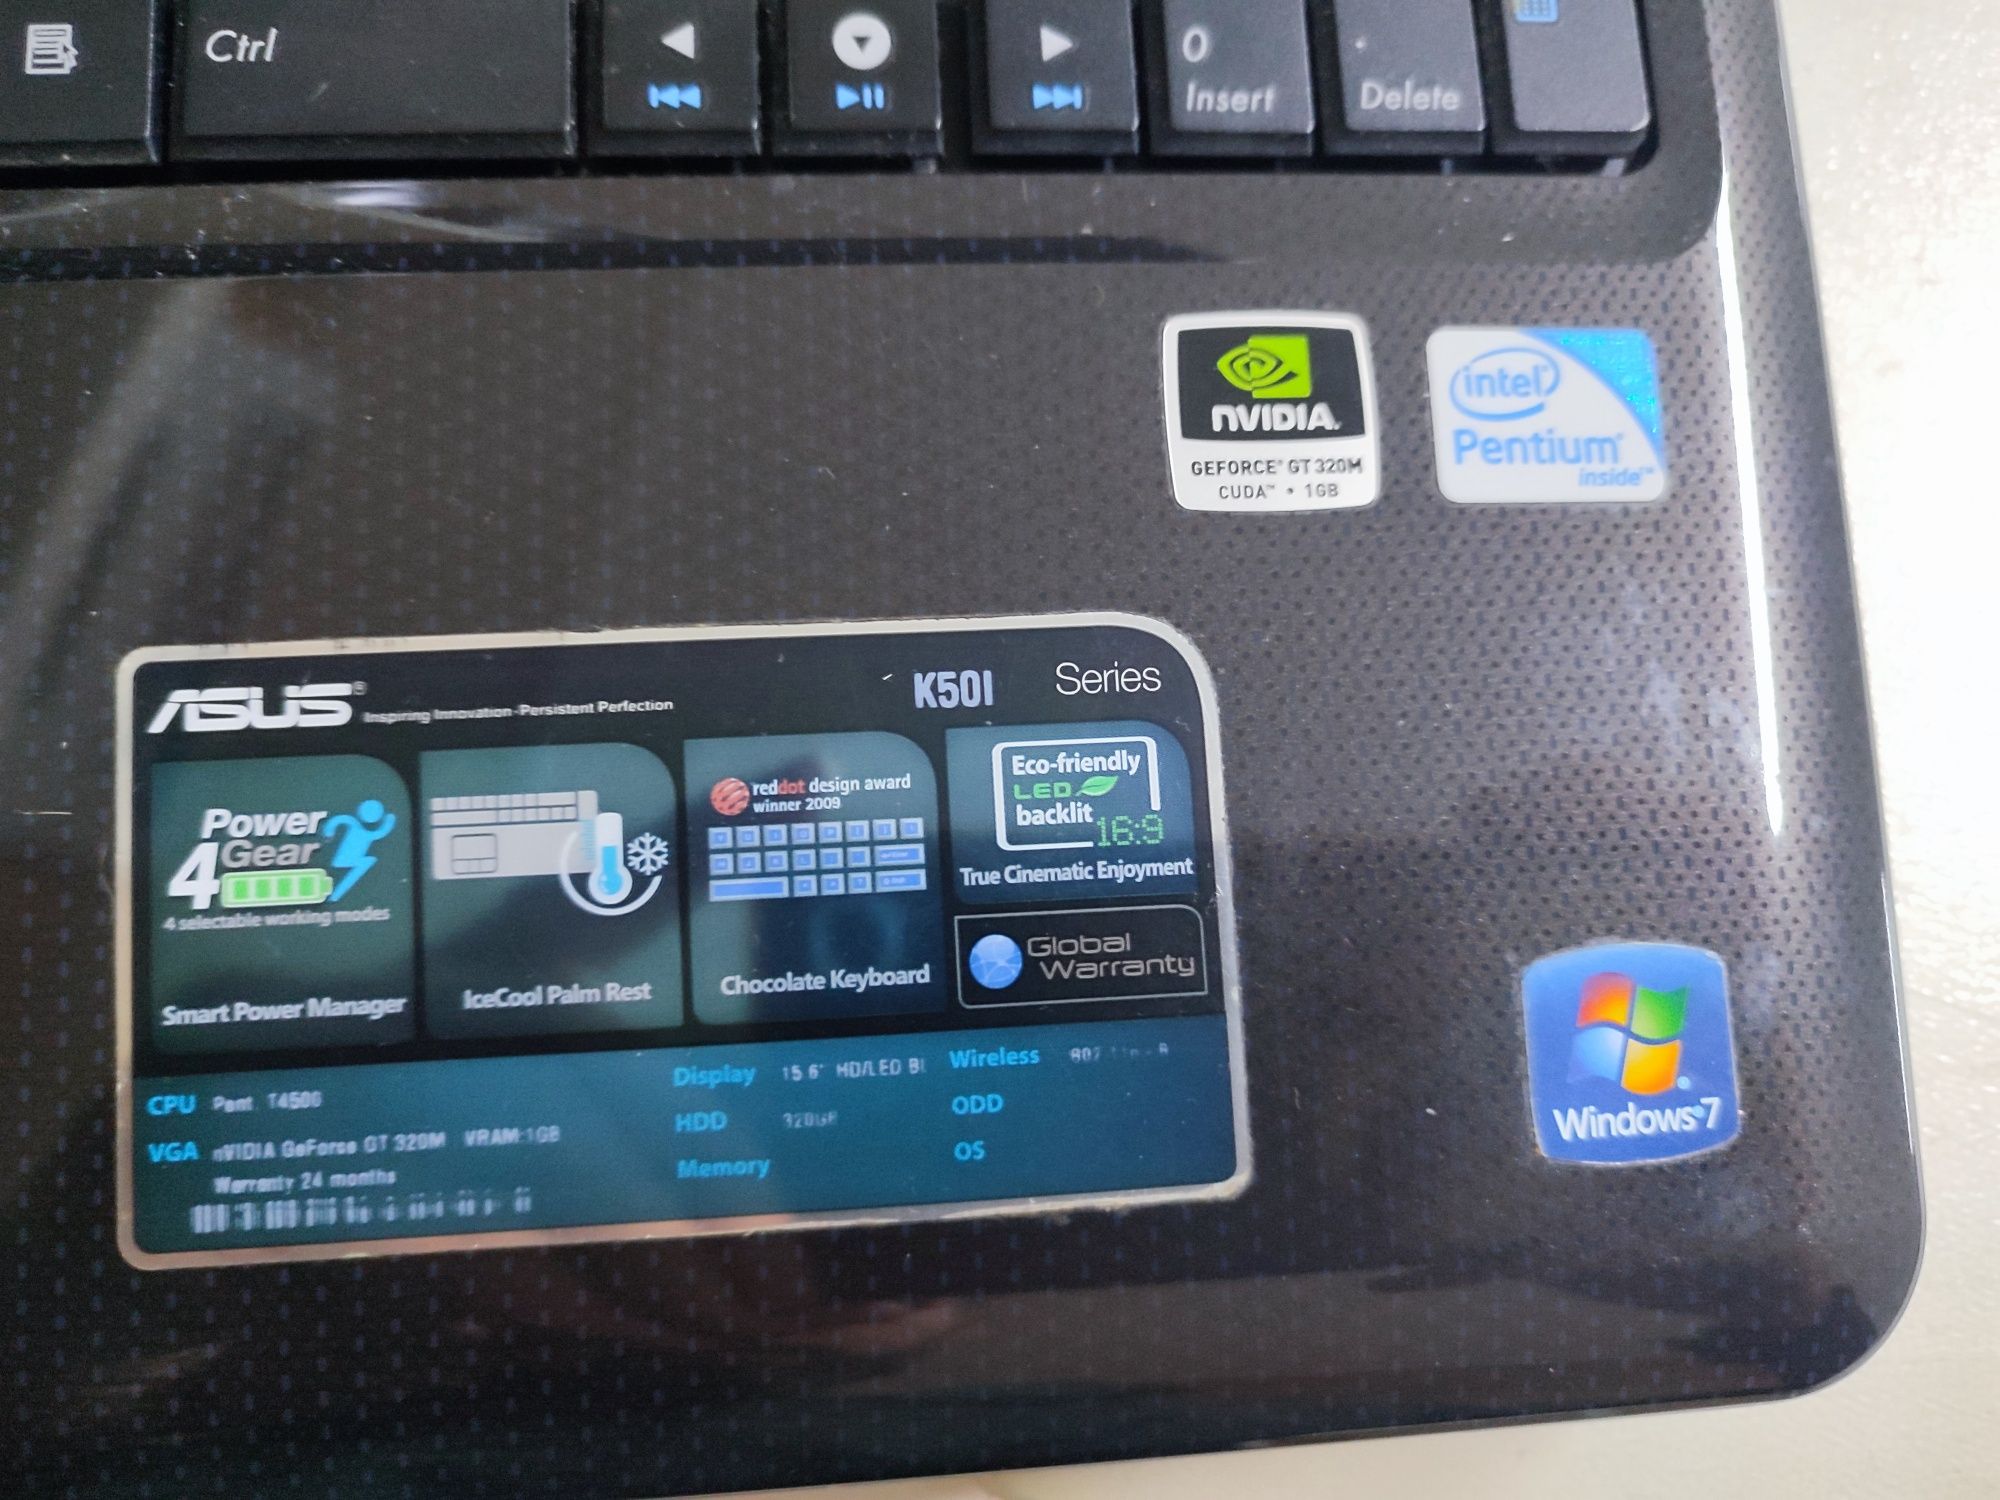 Portátil ASUS K50l - HDD 500GB - 4 Gb RAM - Gráfica 1 GB Dedicada